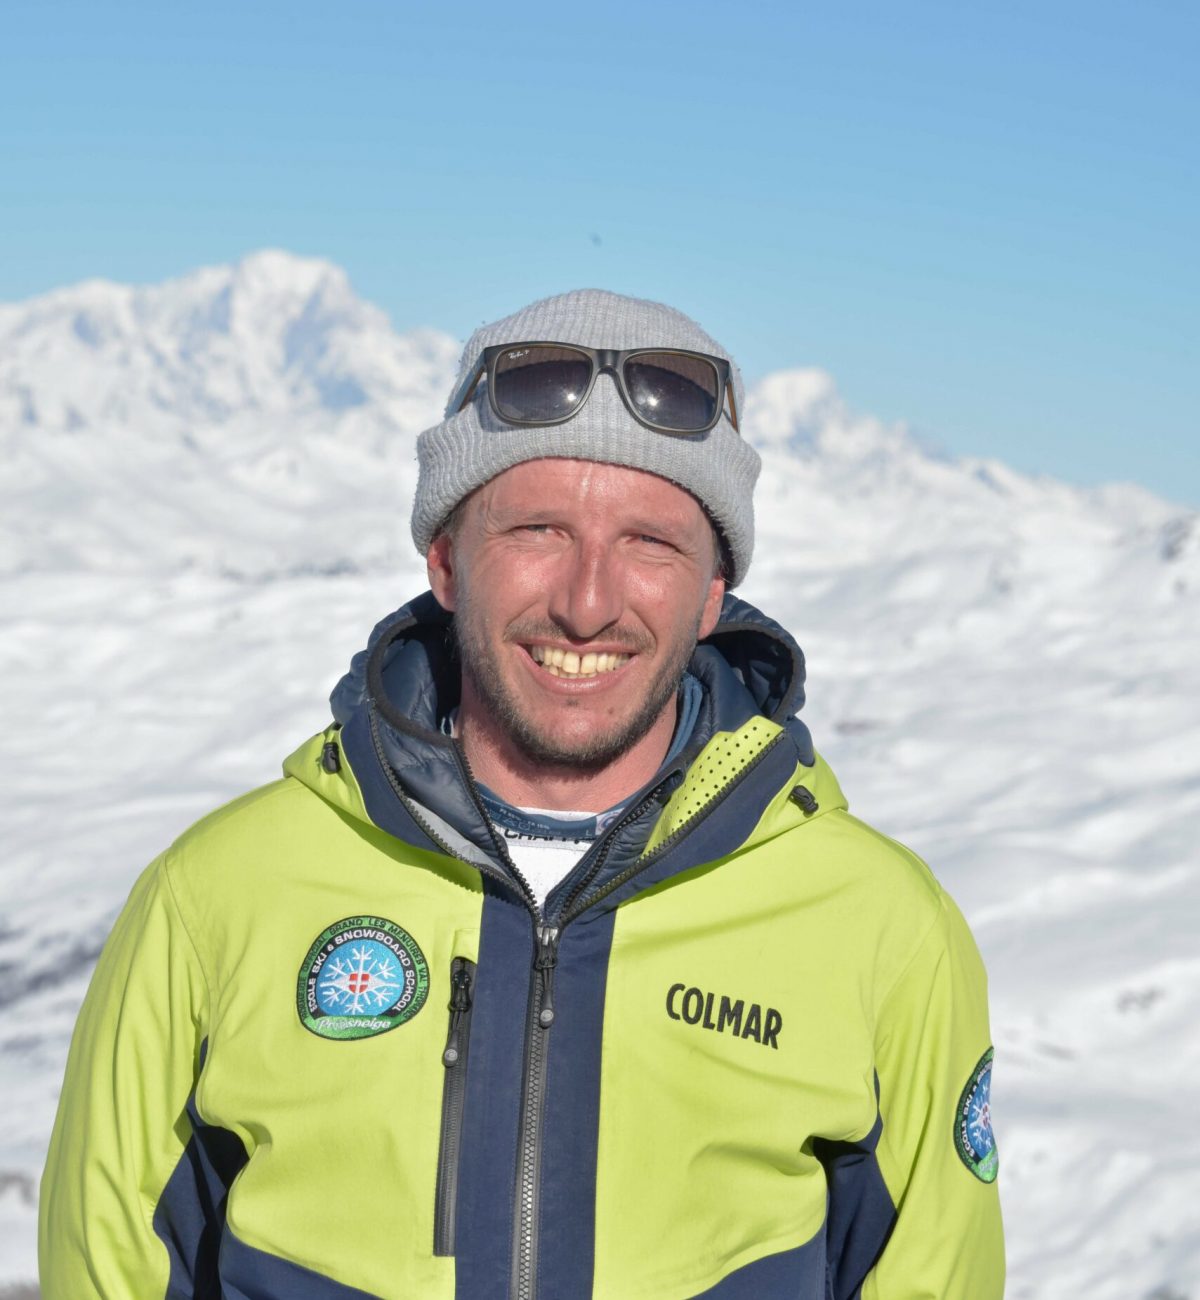 Nicolas-moniteur-ski-prosneige